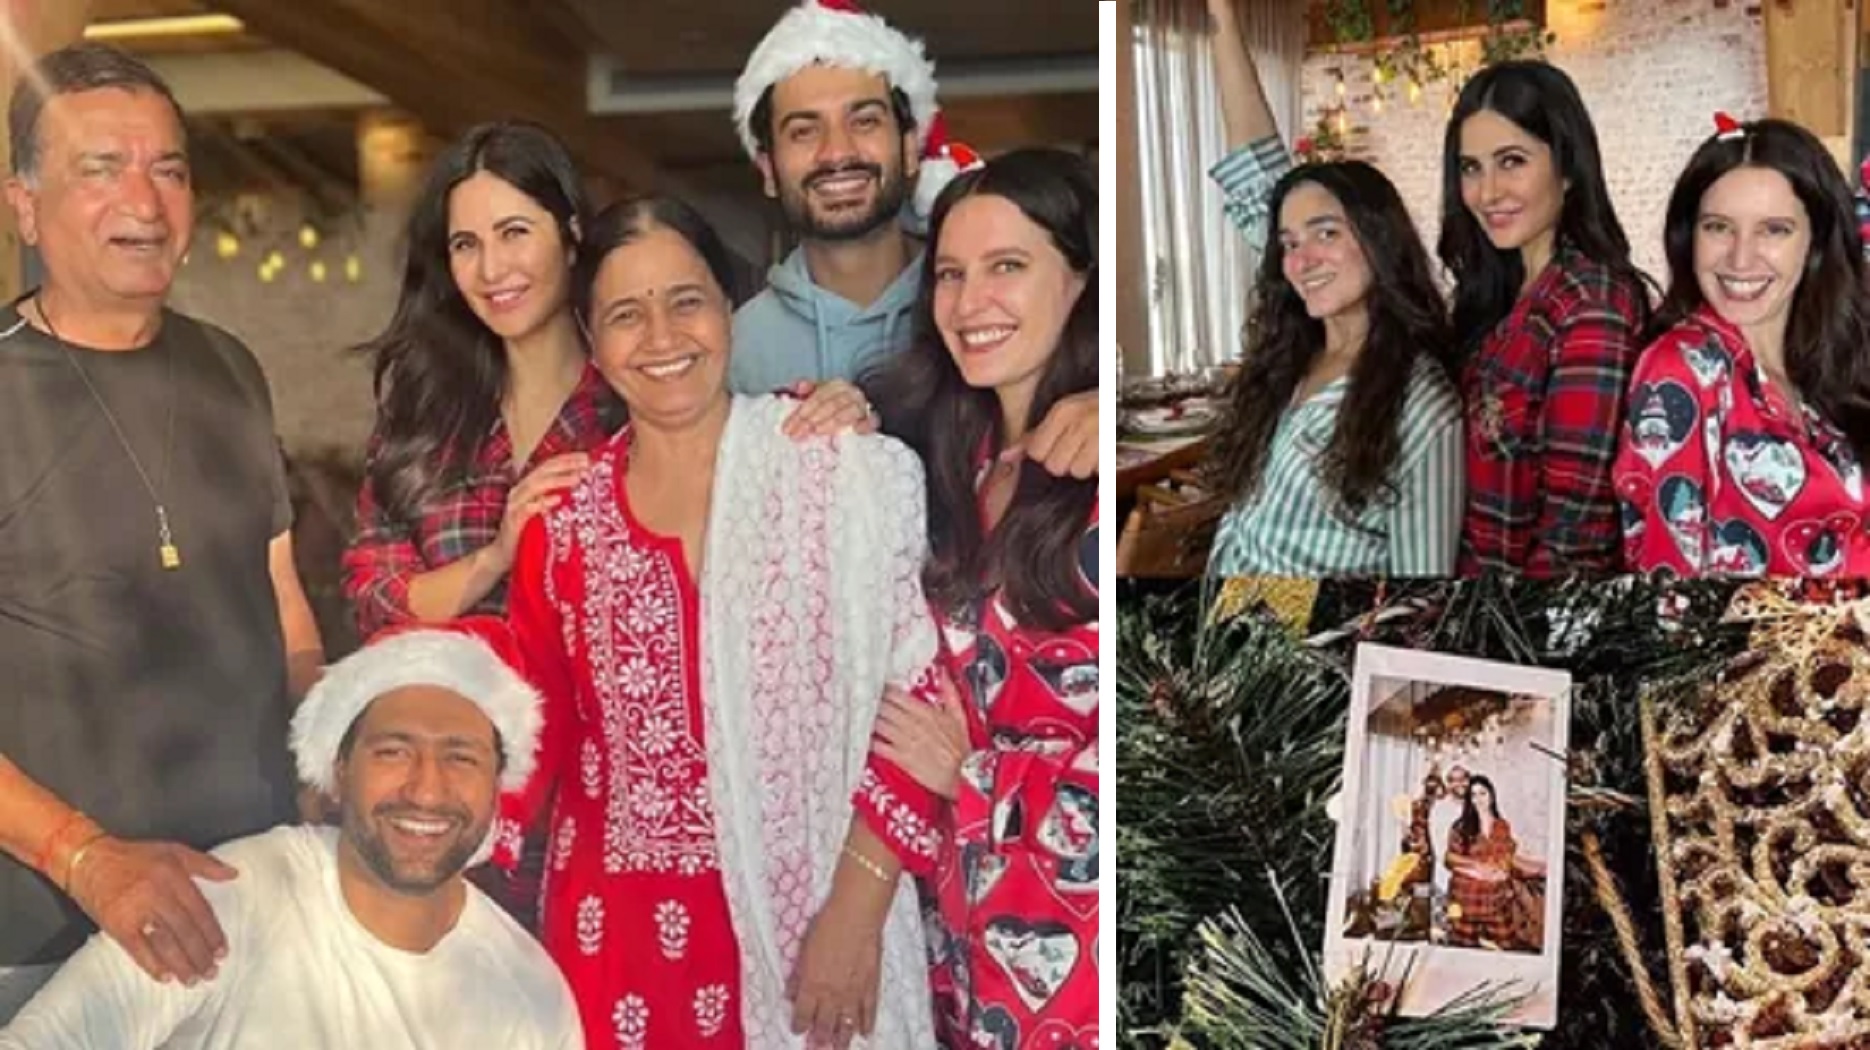 Happy Family: Katrina Kaif & Vicky Kaushal Share Pics From Their Christmas Celebration At Home In Pyjamas And Santa Hats